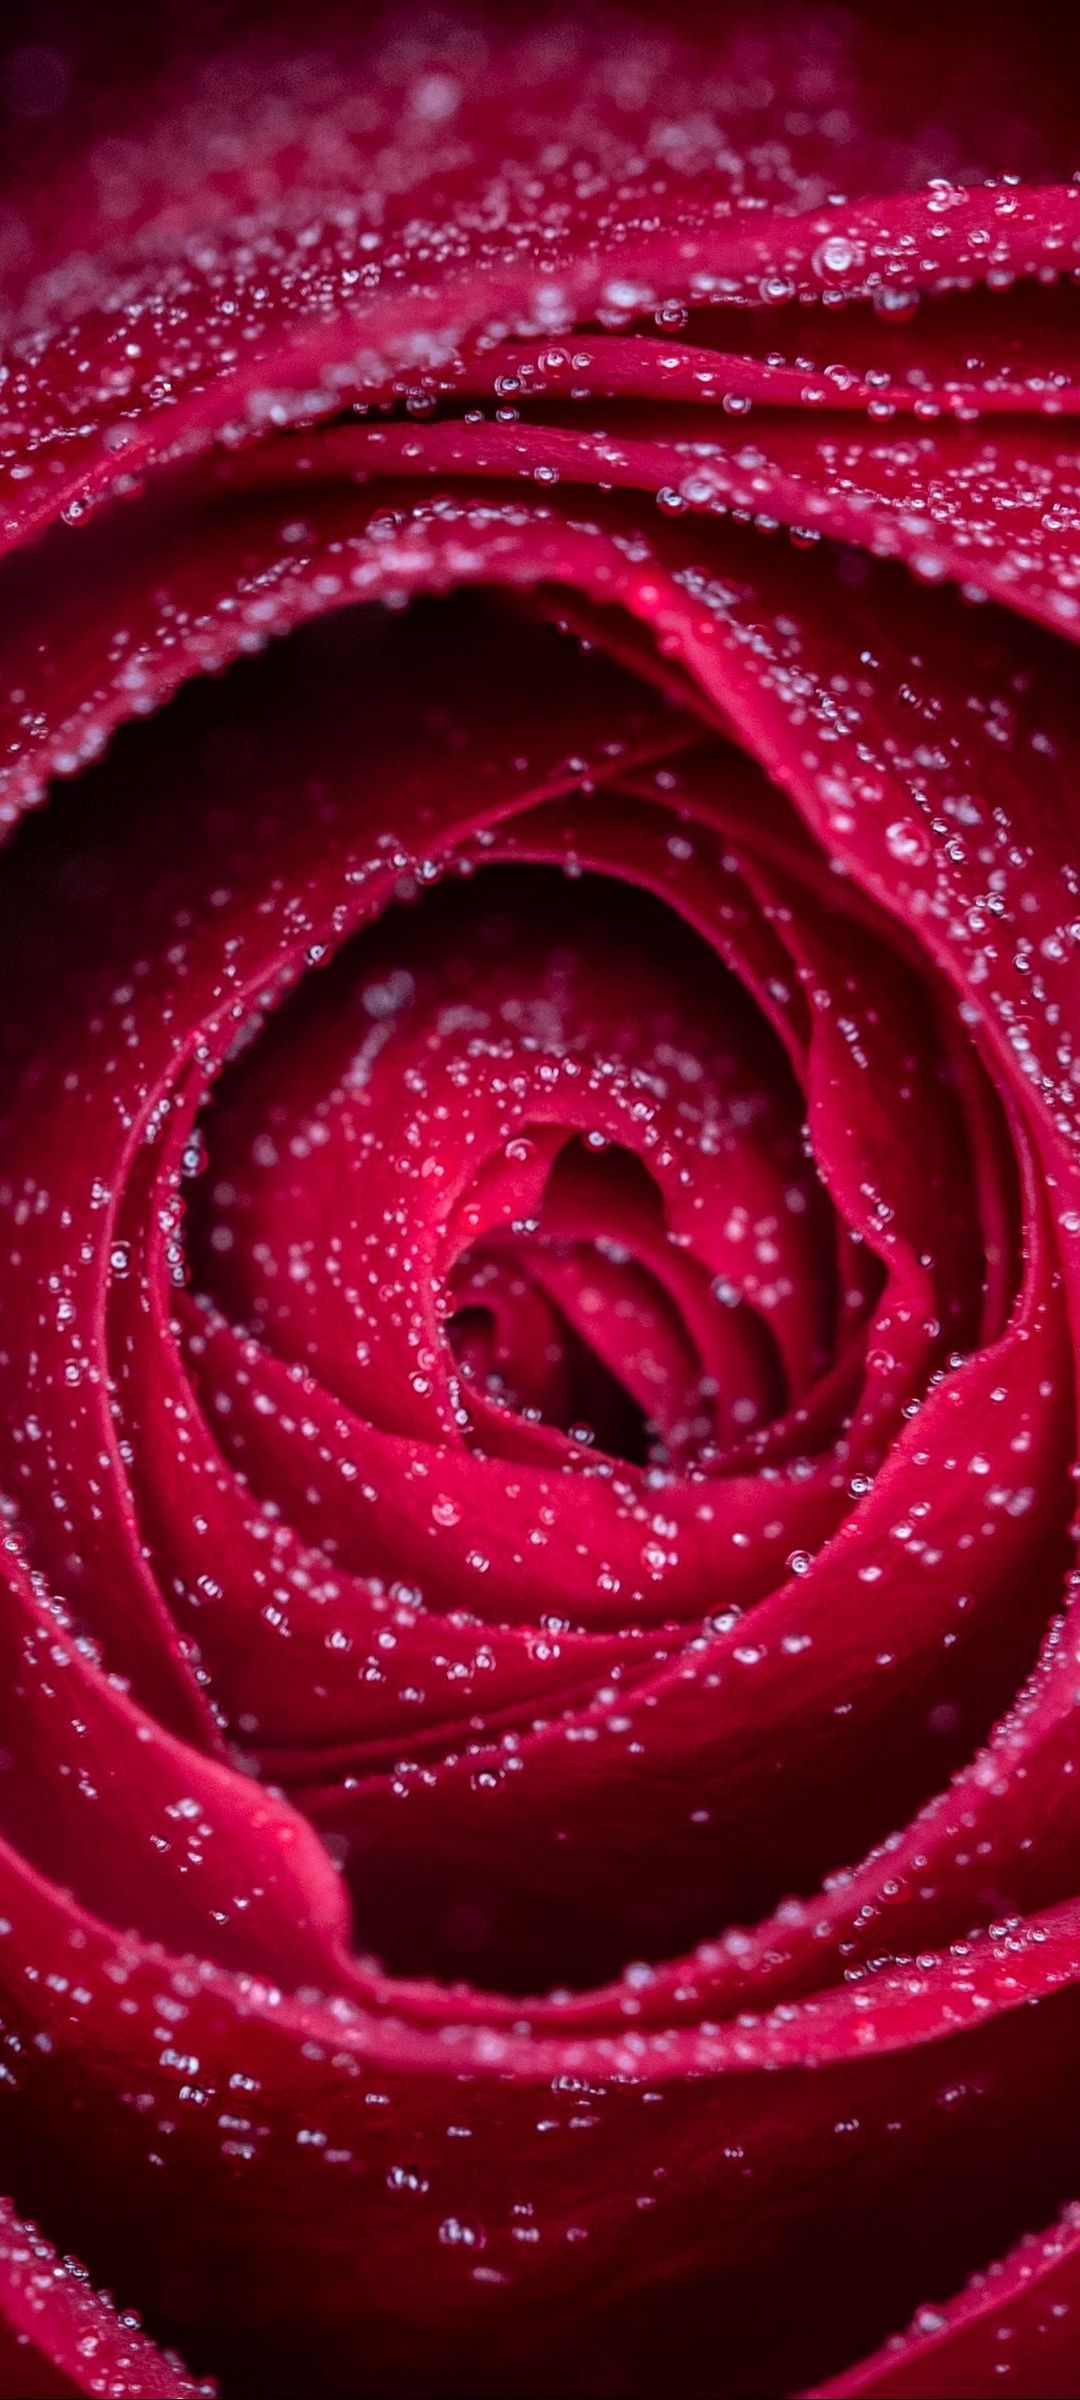 小さな水滴がついた赤い薔薇 Galaxy S21 5g Androidスマホ壁紙 待ち受け スマラン